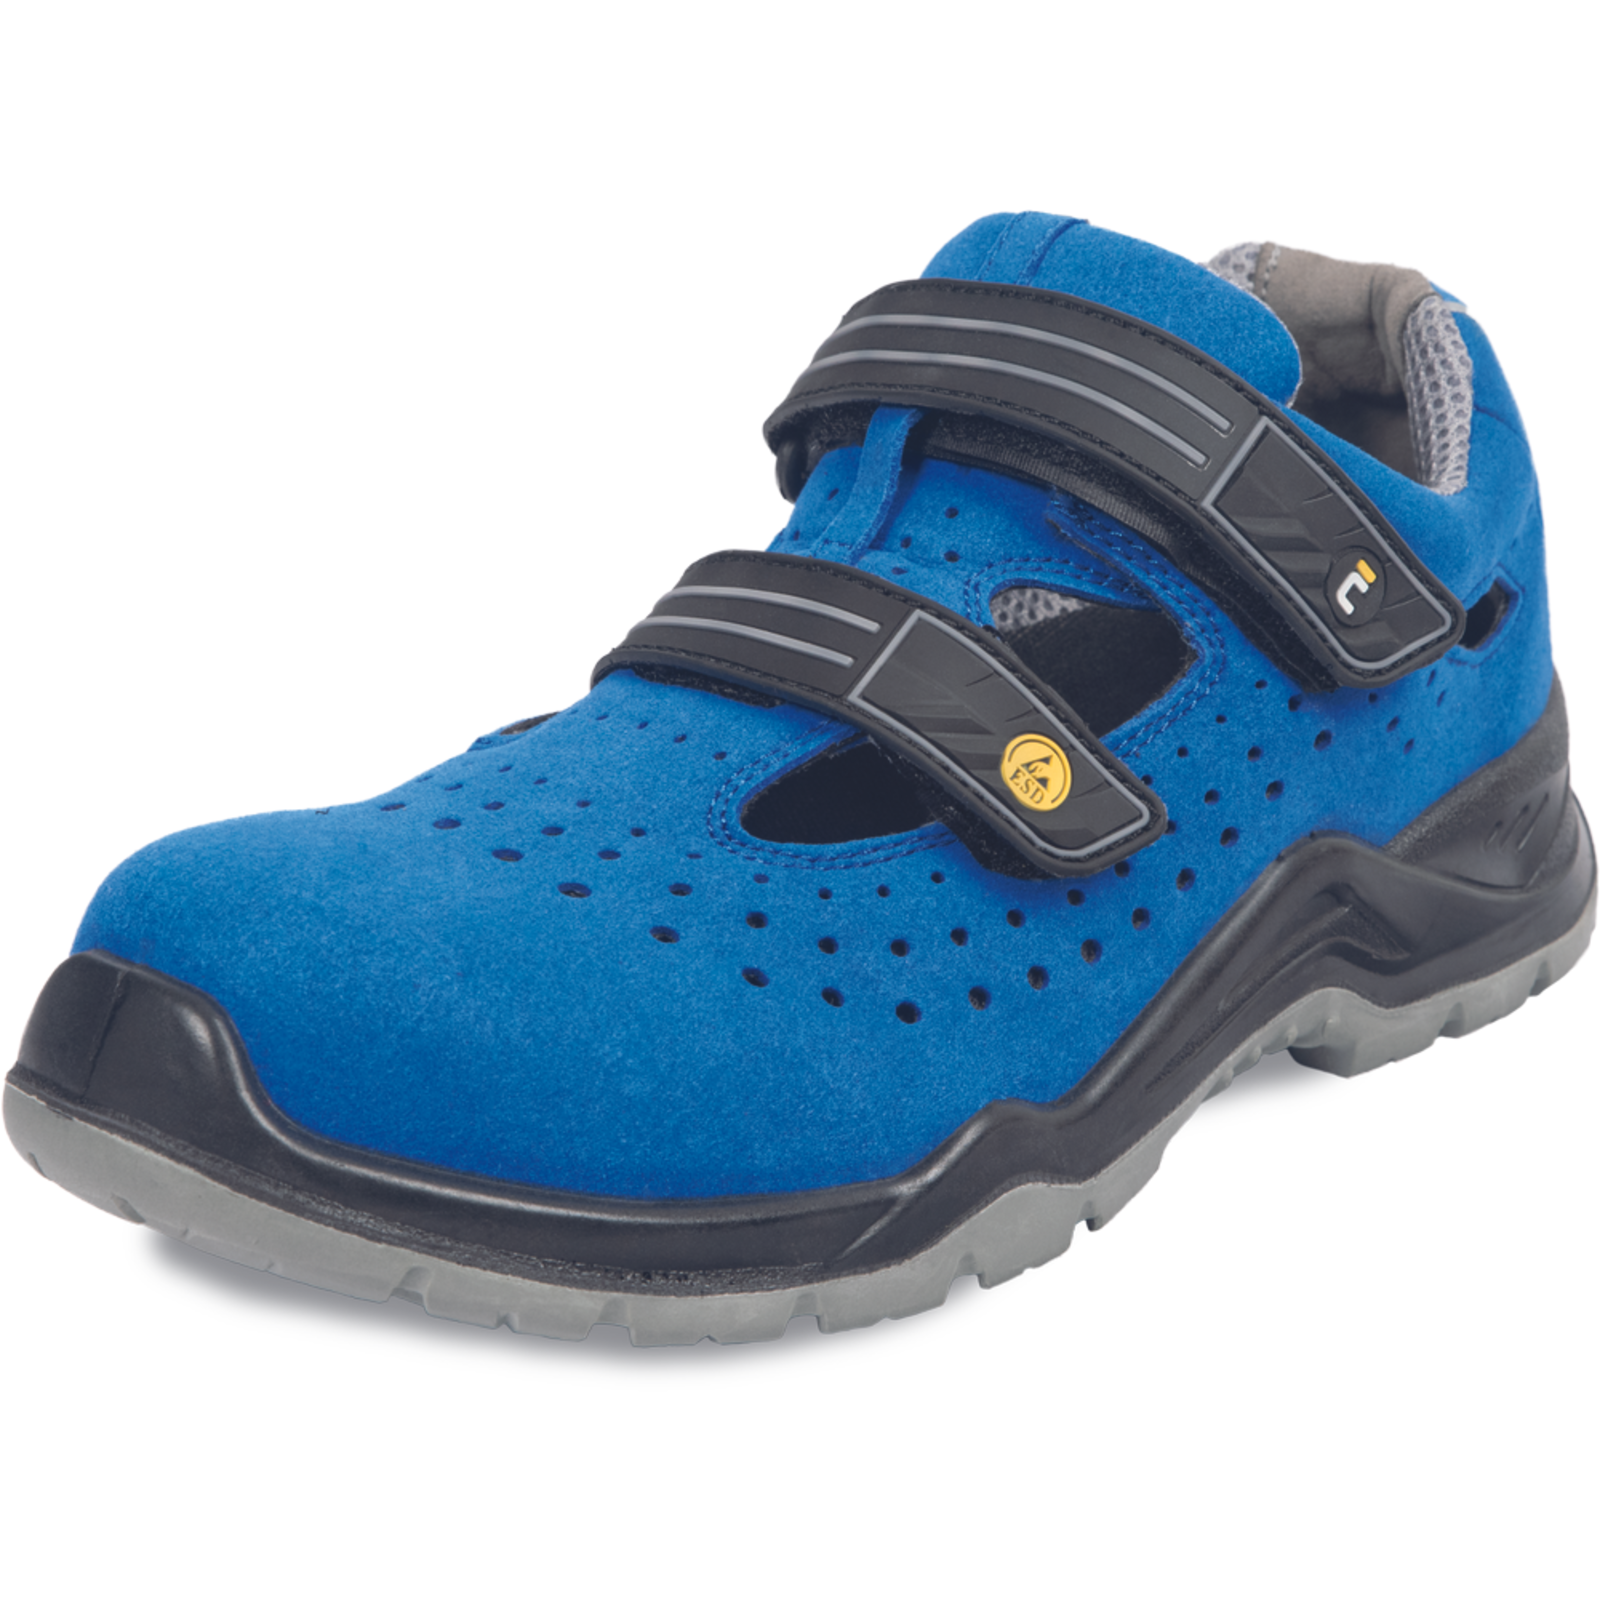 Bezpečnostné pracovné sandále Cerva Hagewill S1P - veľkosť: 45, farba: modrá